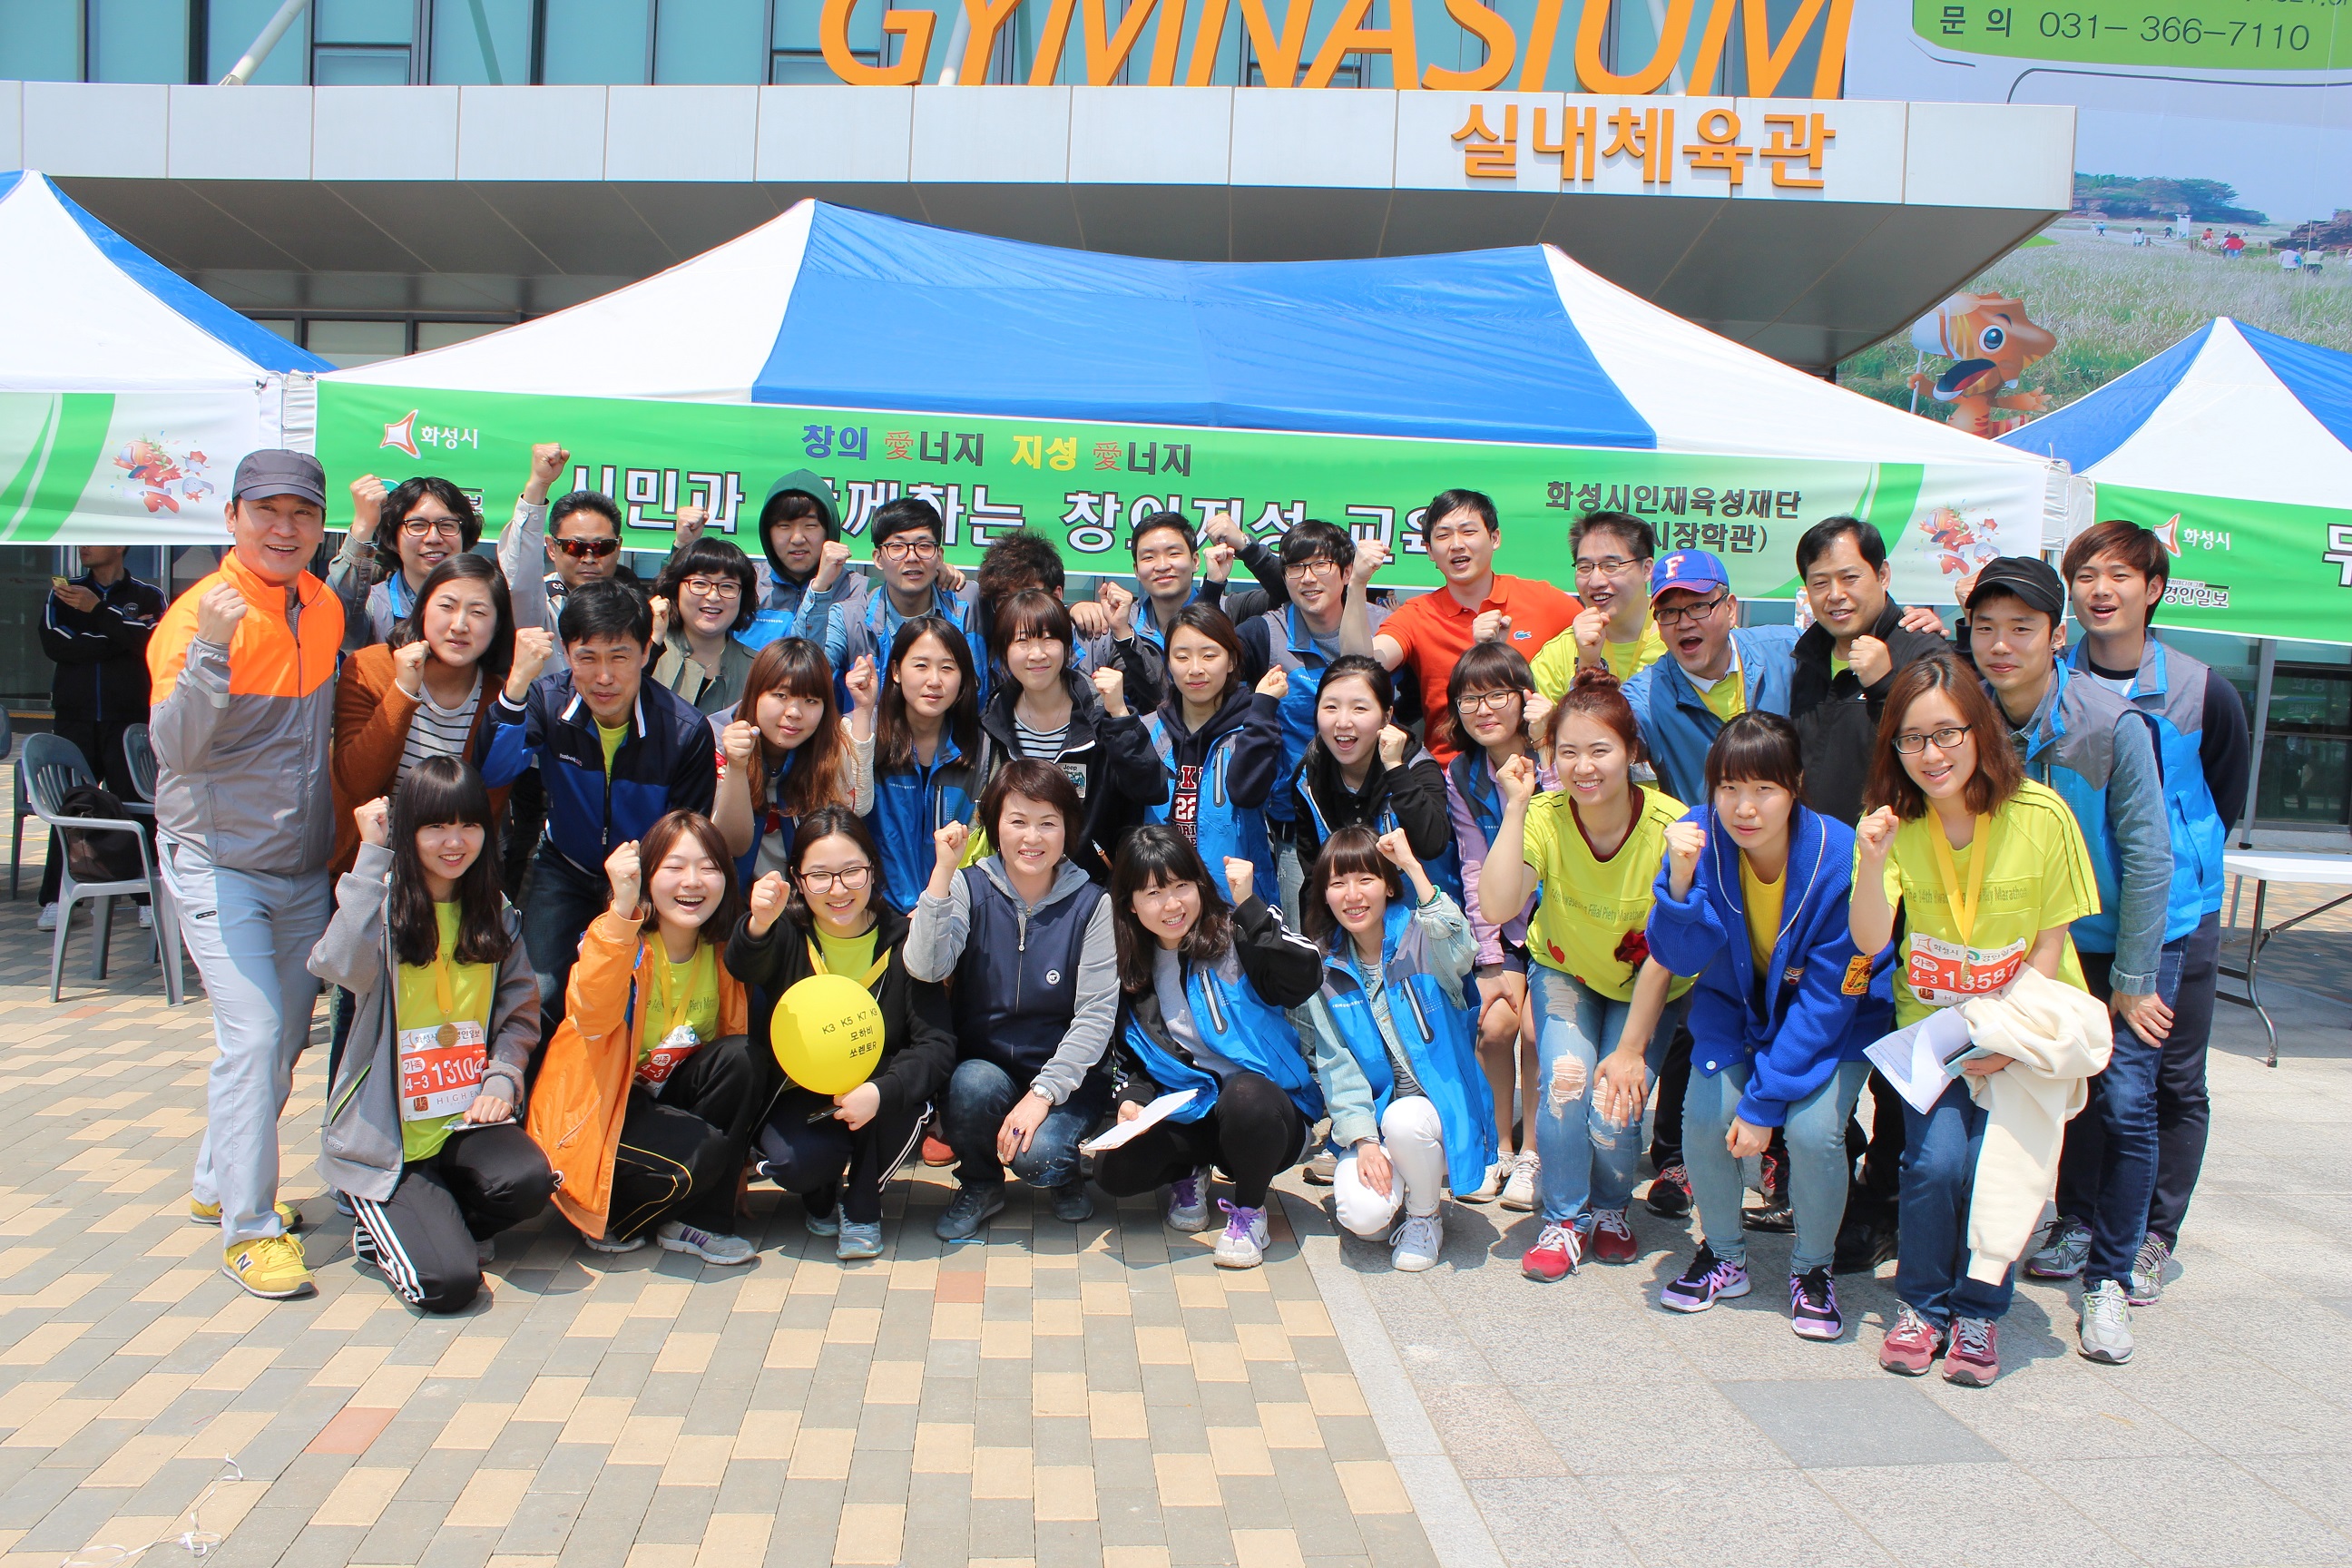 2013년 화성시 효마라톤대회 부스운영